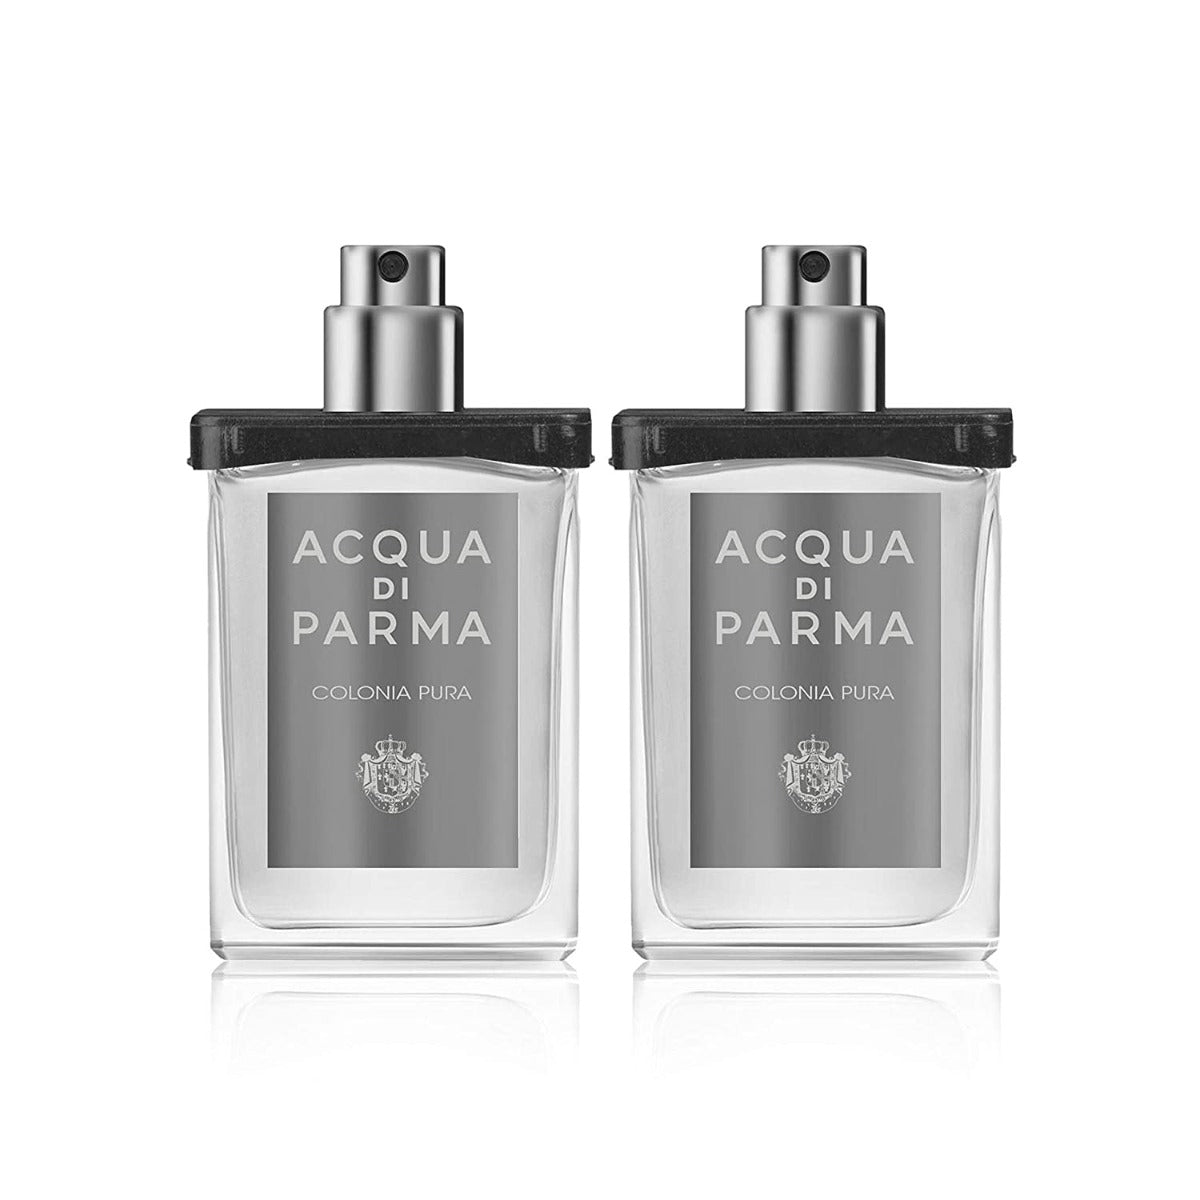 ACQUA DI PARMA COLONIA PURA - PERFUME FOR UNISEX - EDC 2x30 ml TRAVEL SPRAY REFILL - samawa perfumes 